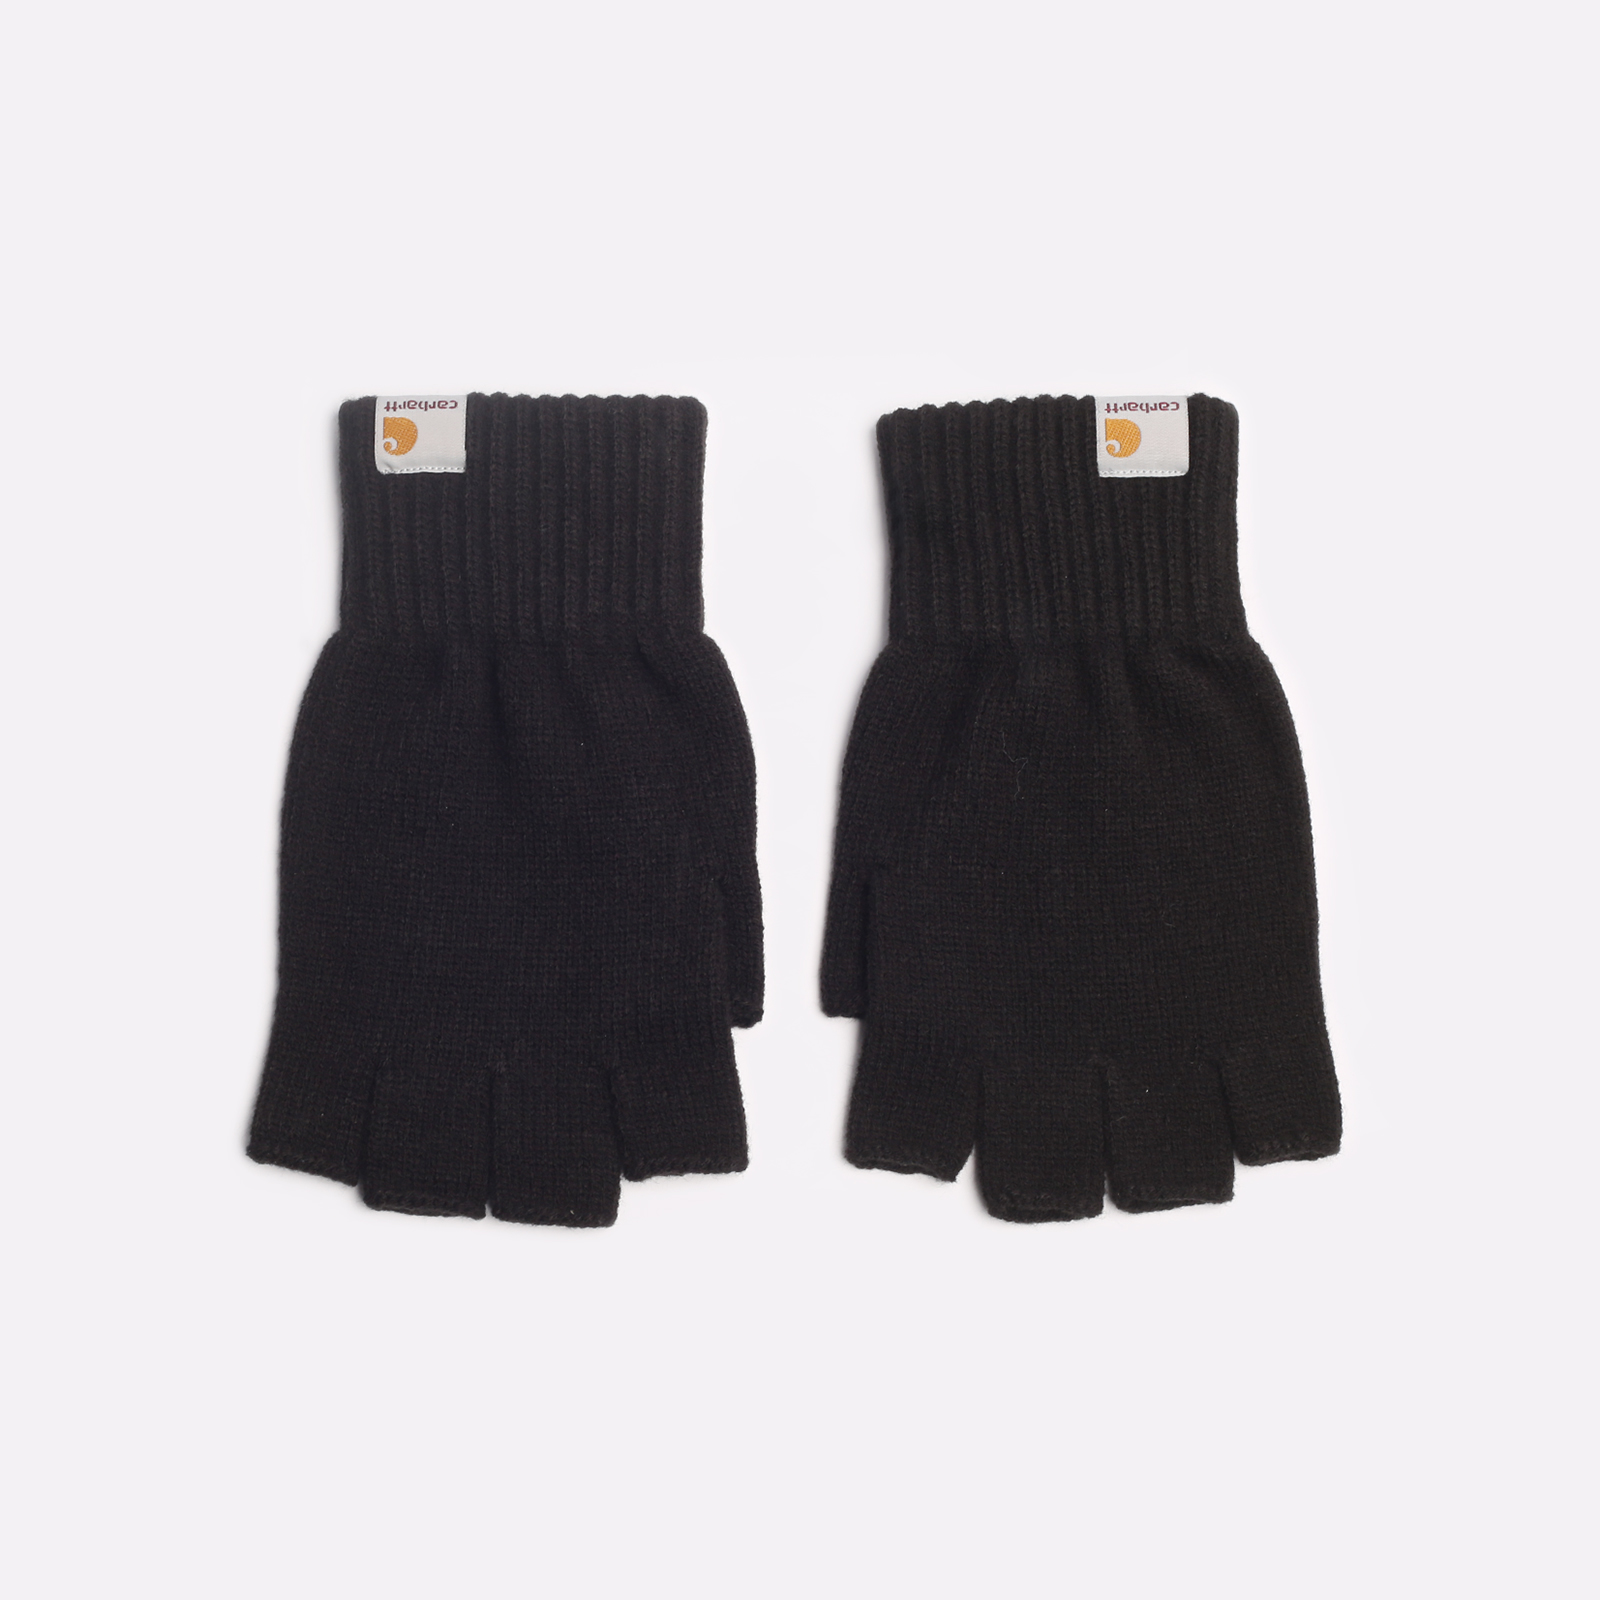 перчатки Carhartt WIP Mitten  (i026559-black)  - цена, описание, фото 1